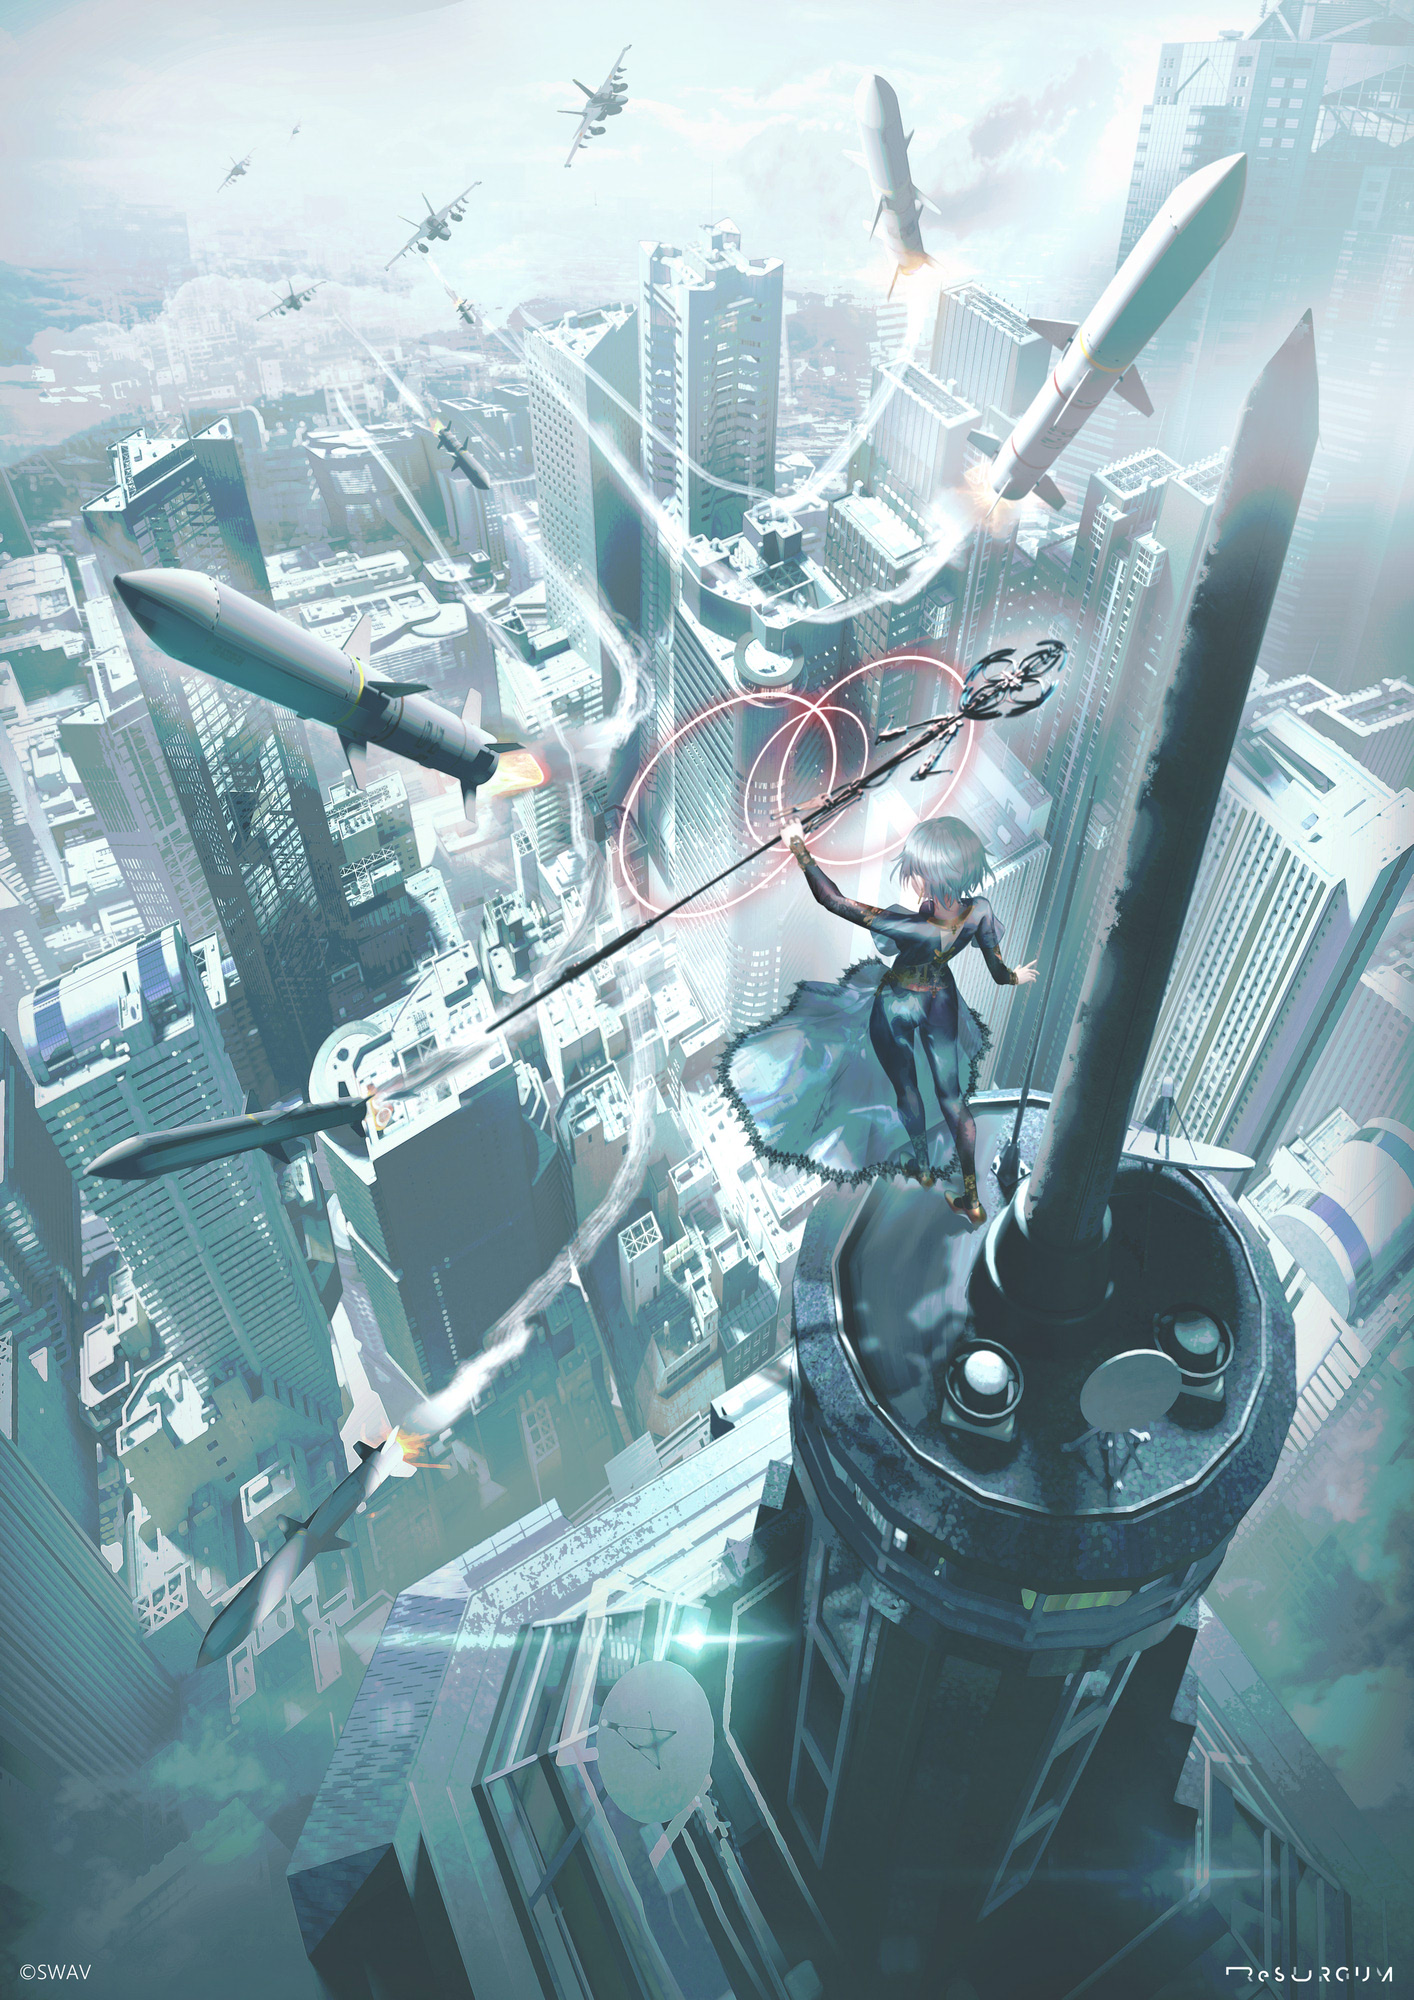 Anime 1414x2000 anime anime girls SWAV artwork cityscape jet fighter missiles